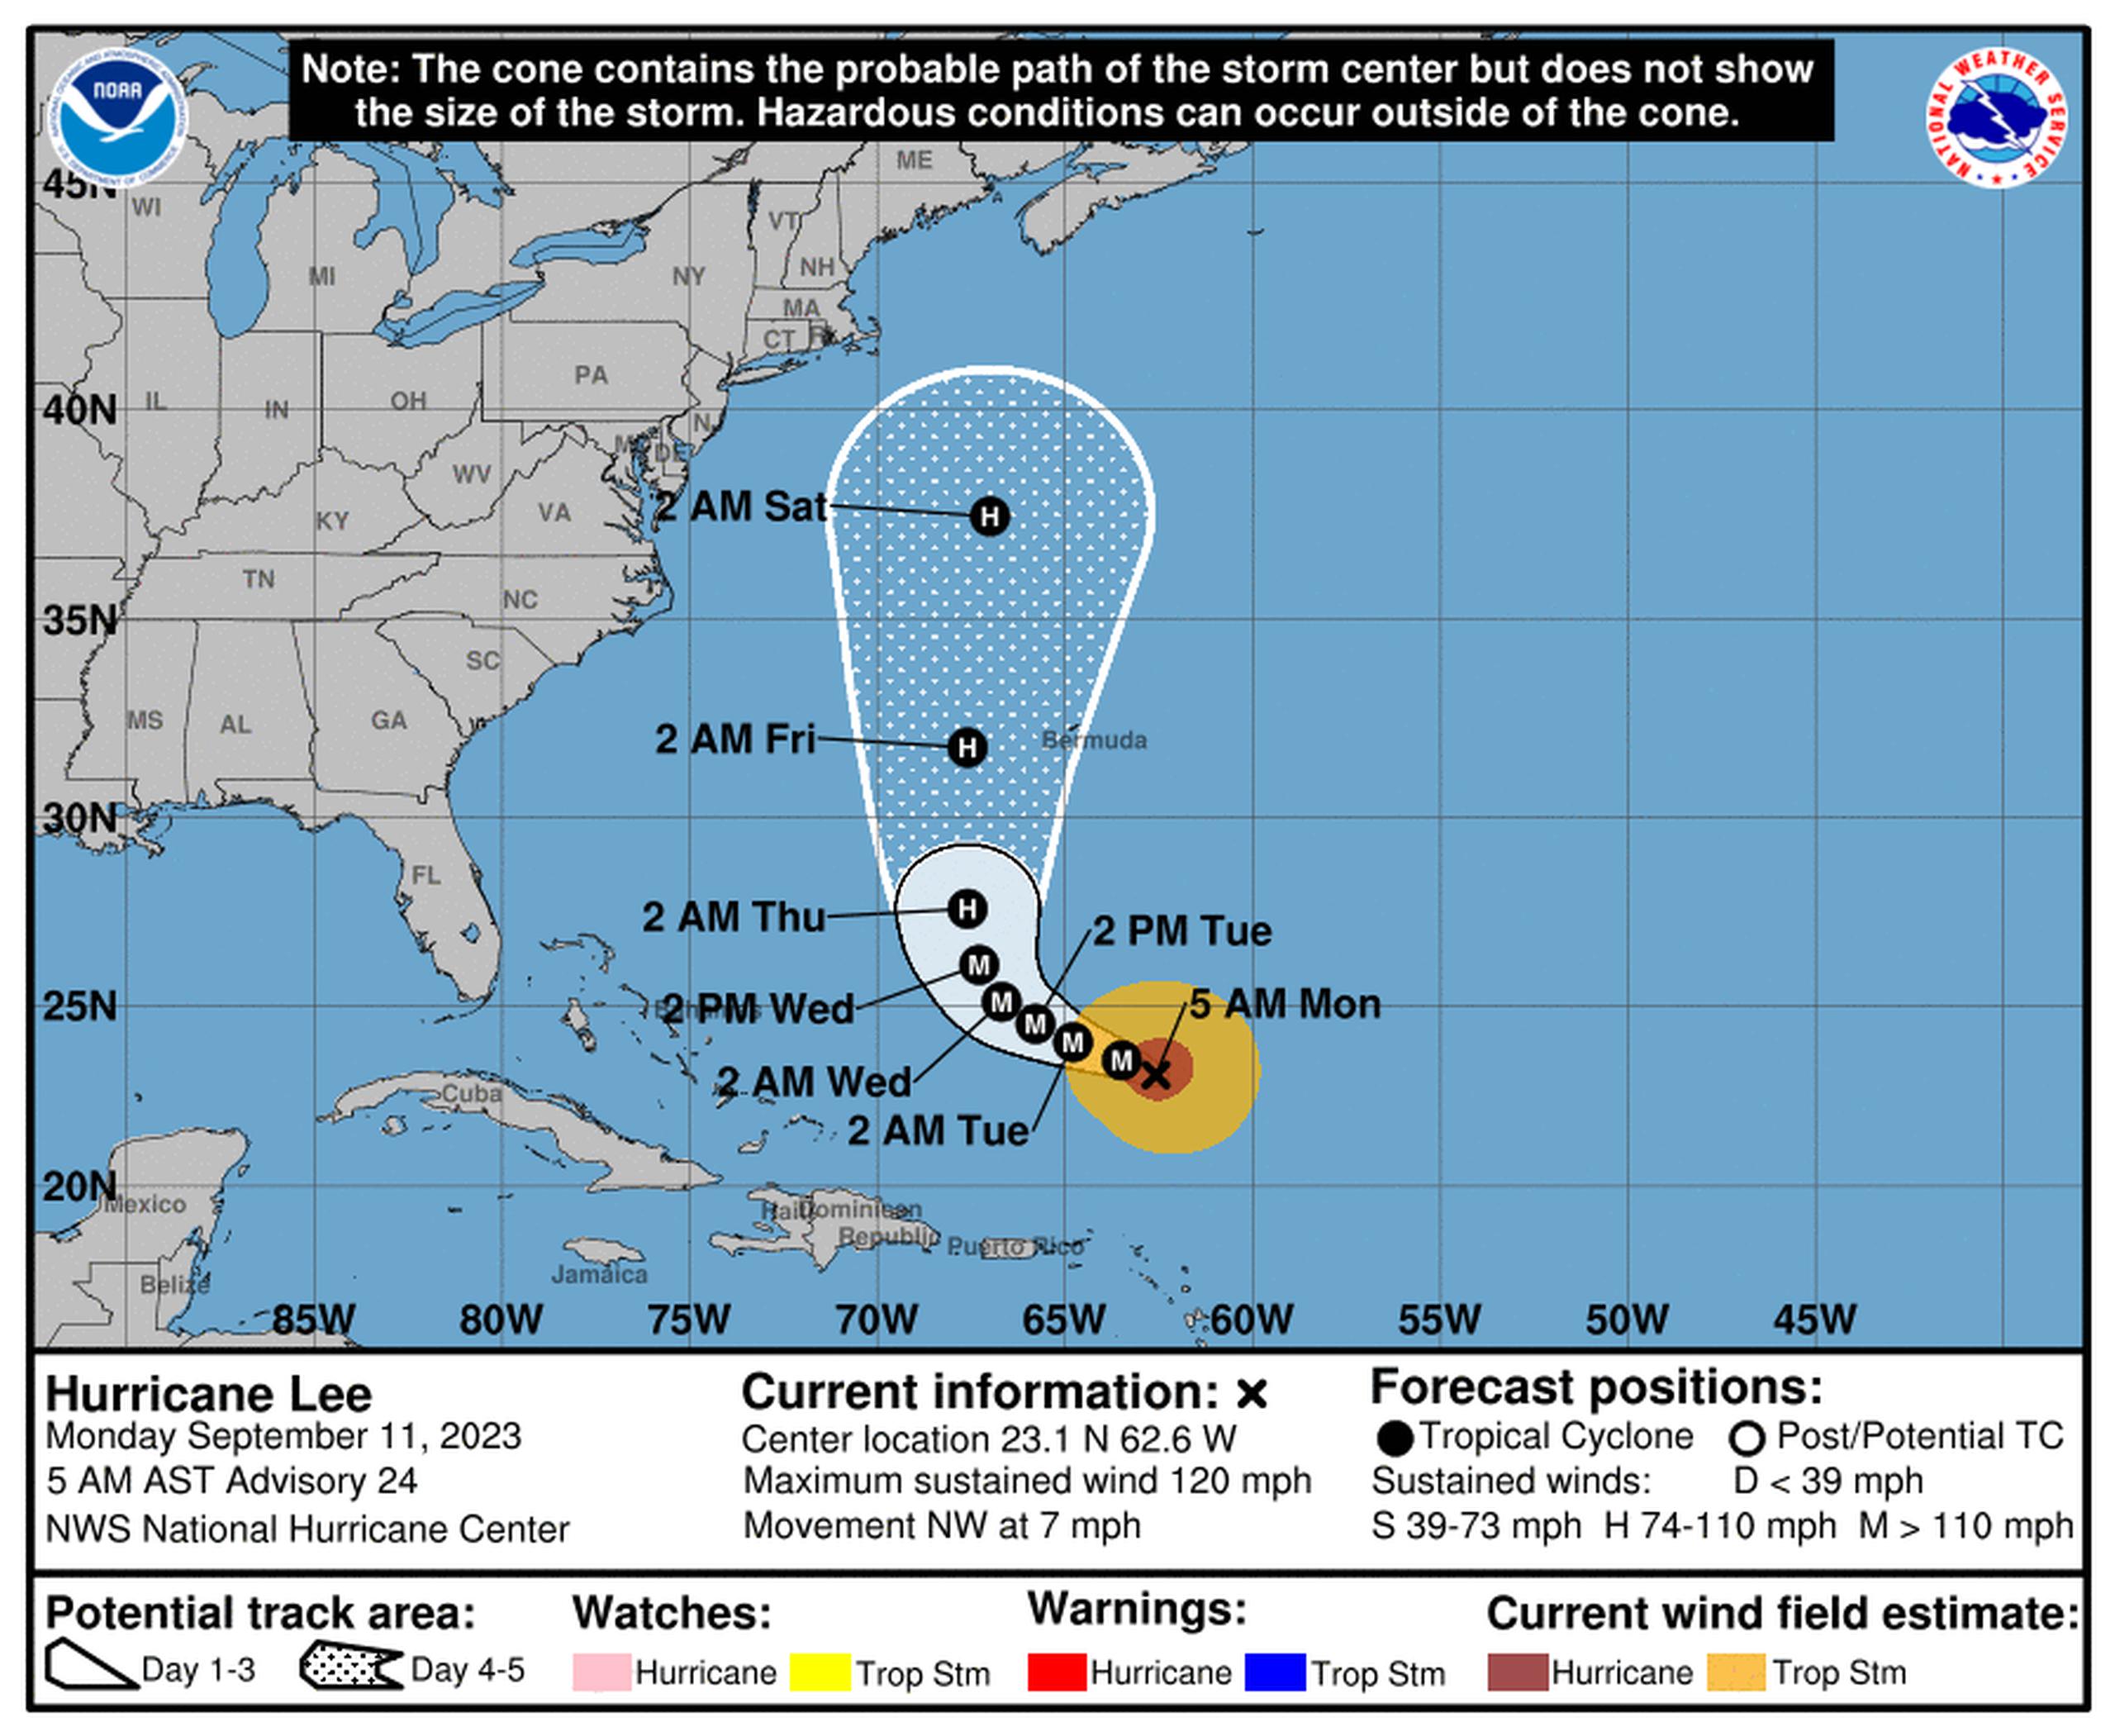 Pronóstico del huracán Lee emitido a las 5:00 de la mañana por el Centro Nacional de Huracanes.